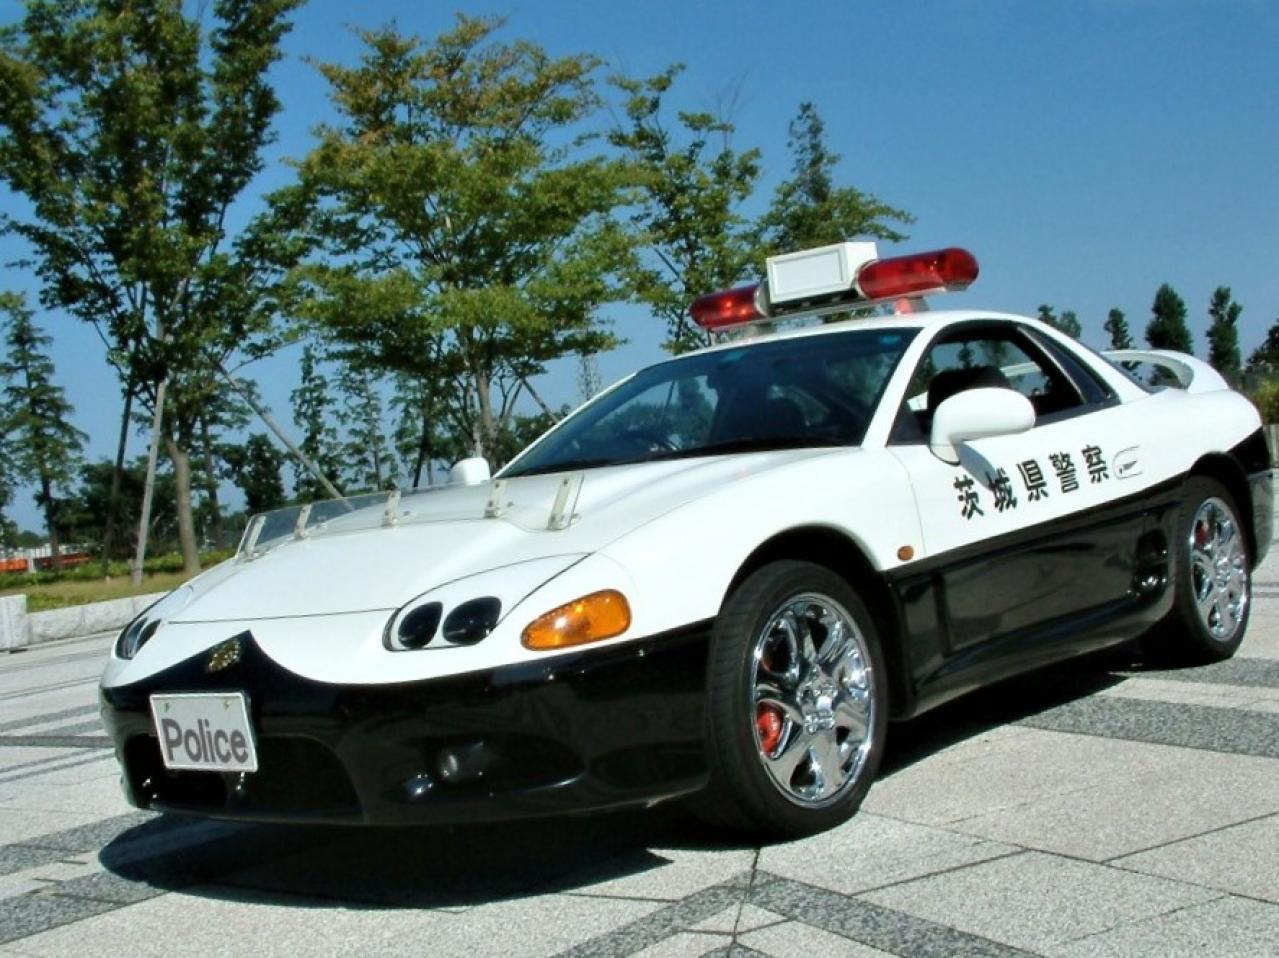 ちょっとイケてる茨城県警のホームページに三菱gtoパトカーの 壁紙 を発見 しかもレーダーパトカー仕様 交通取締情報 Motor Fan モーターファン ギャラリー